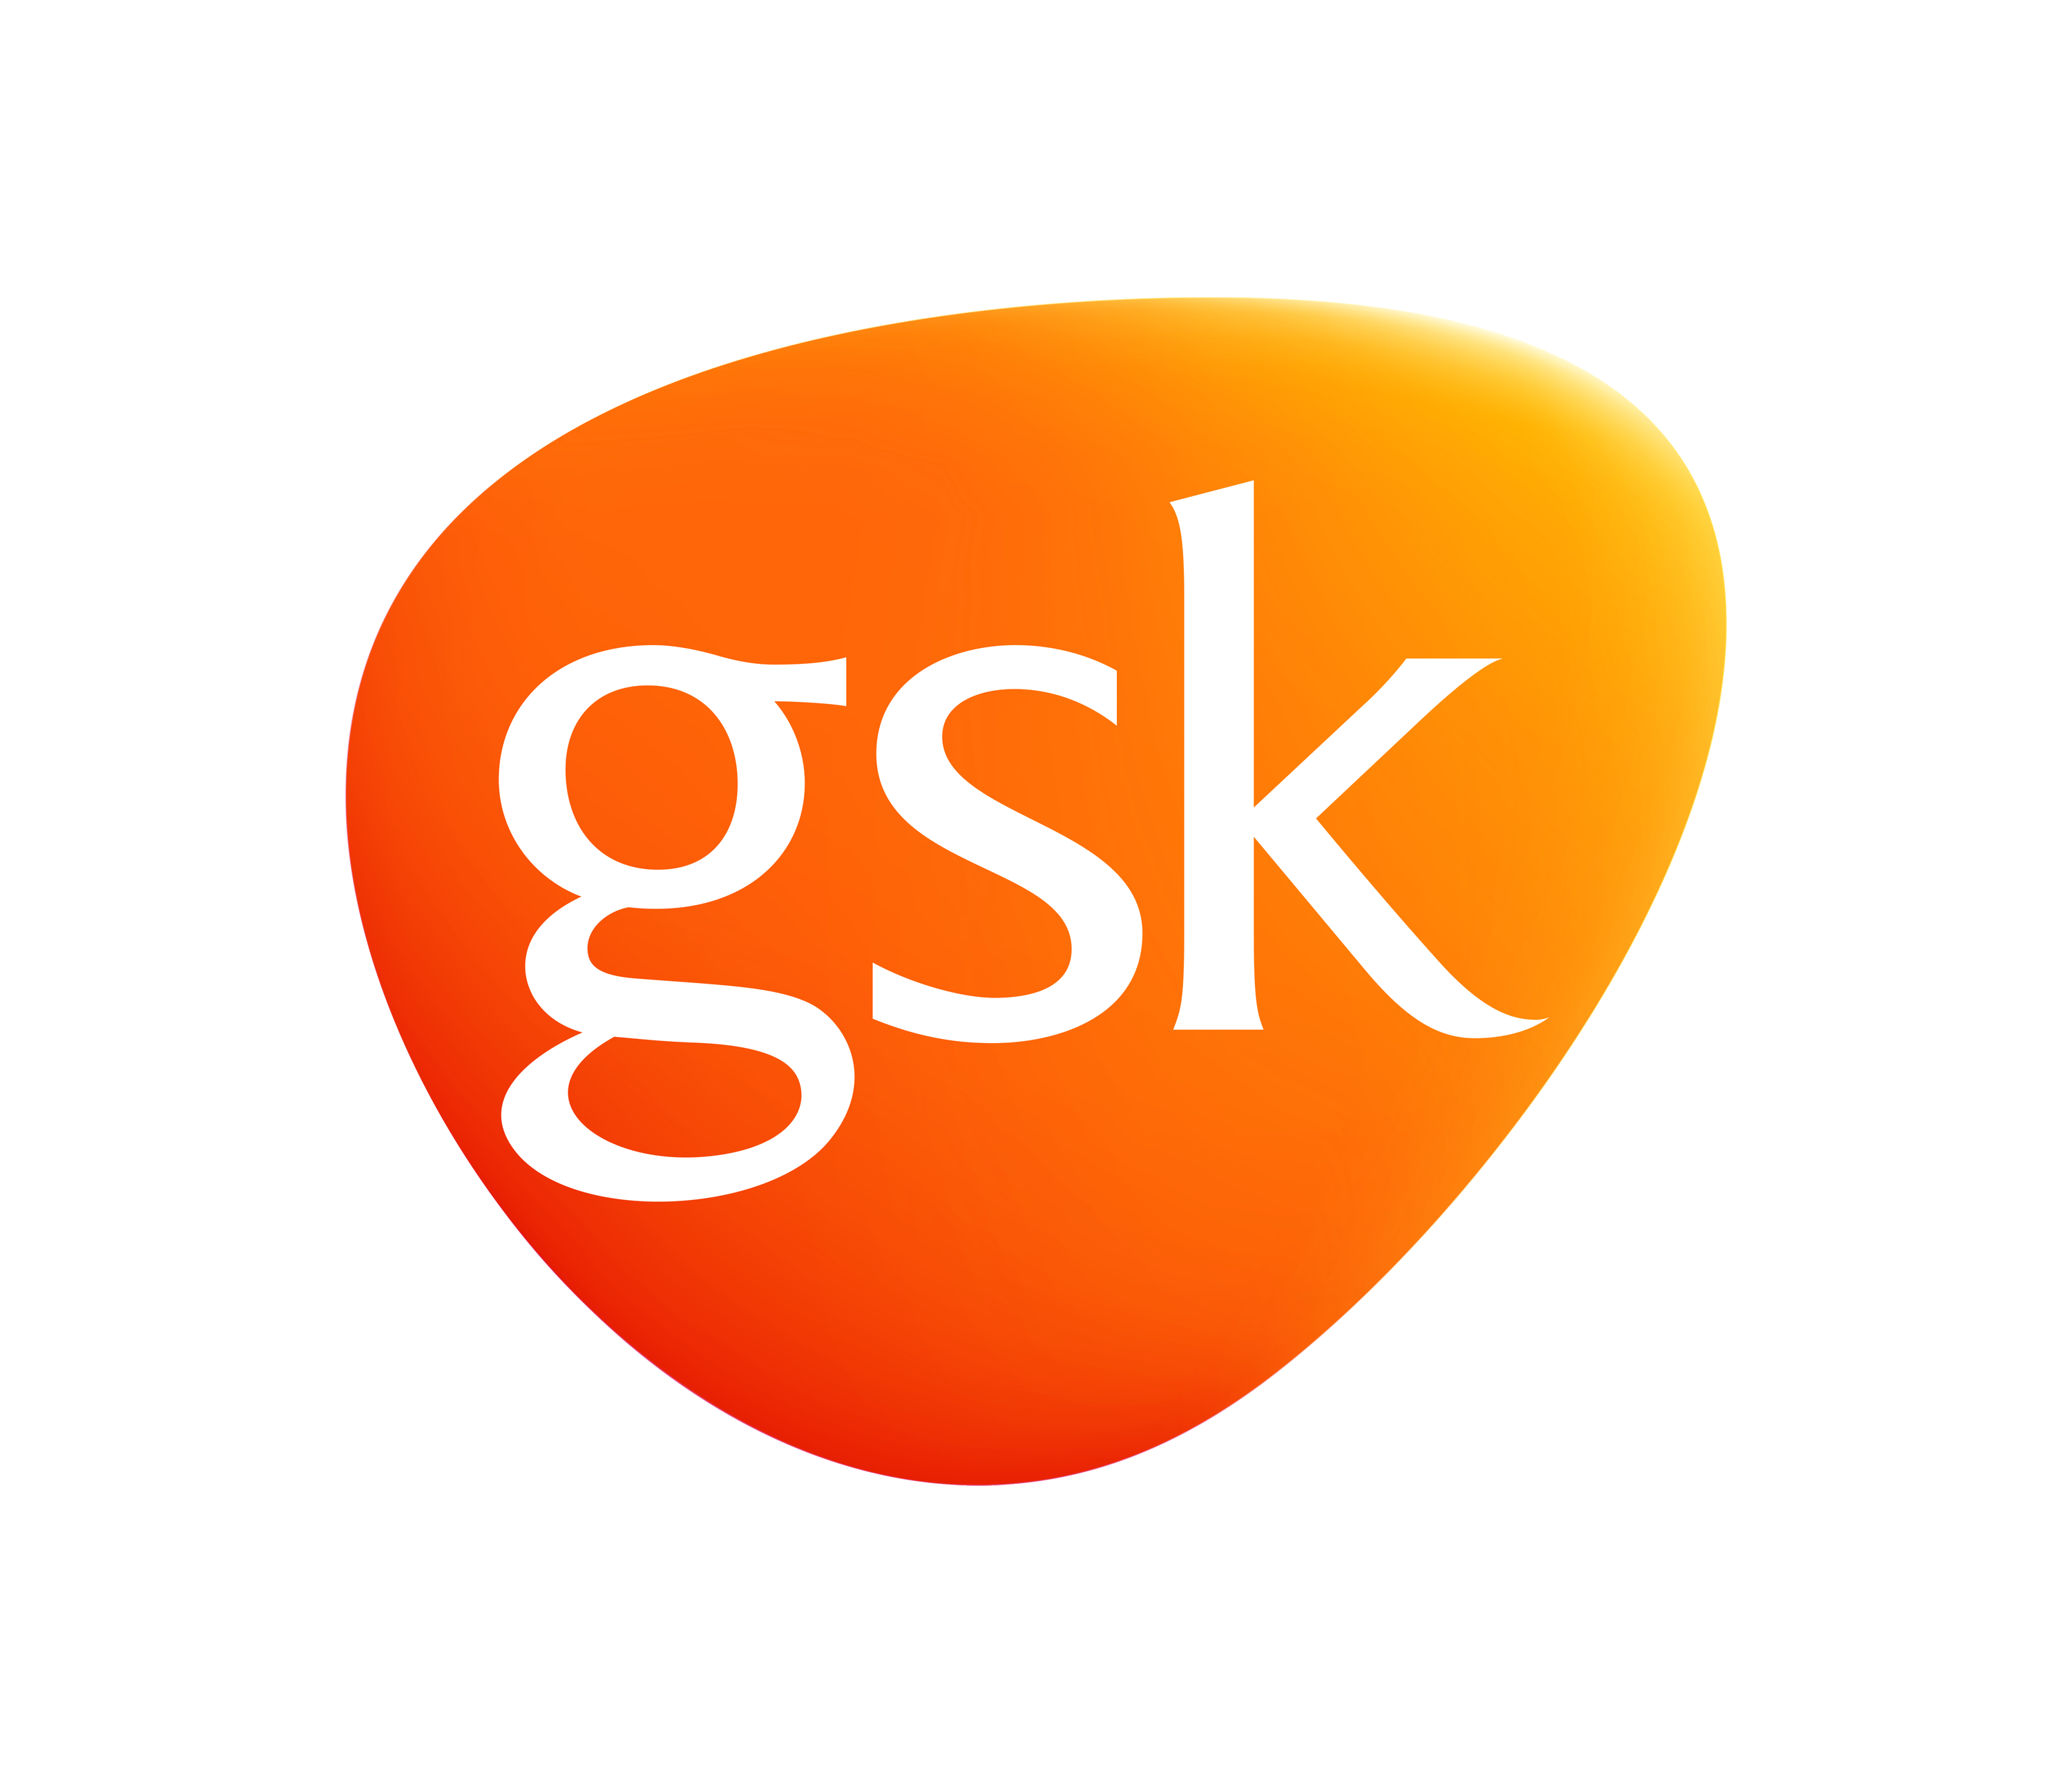 GSK_L_RGB